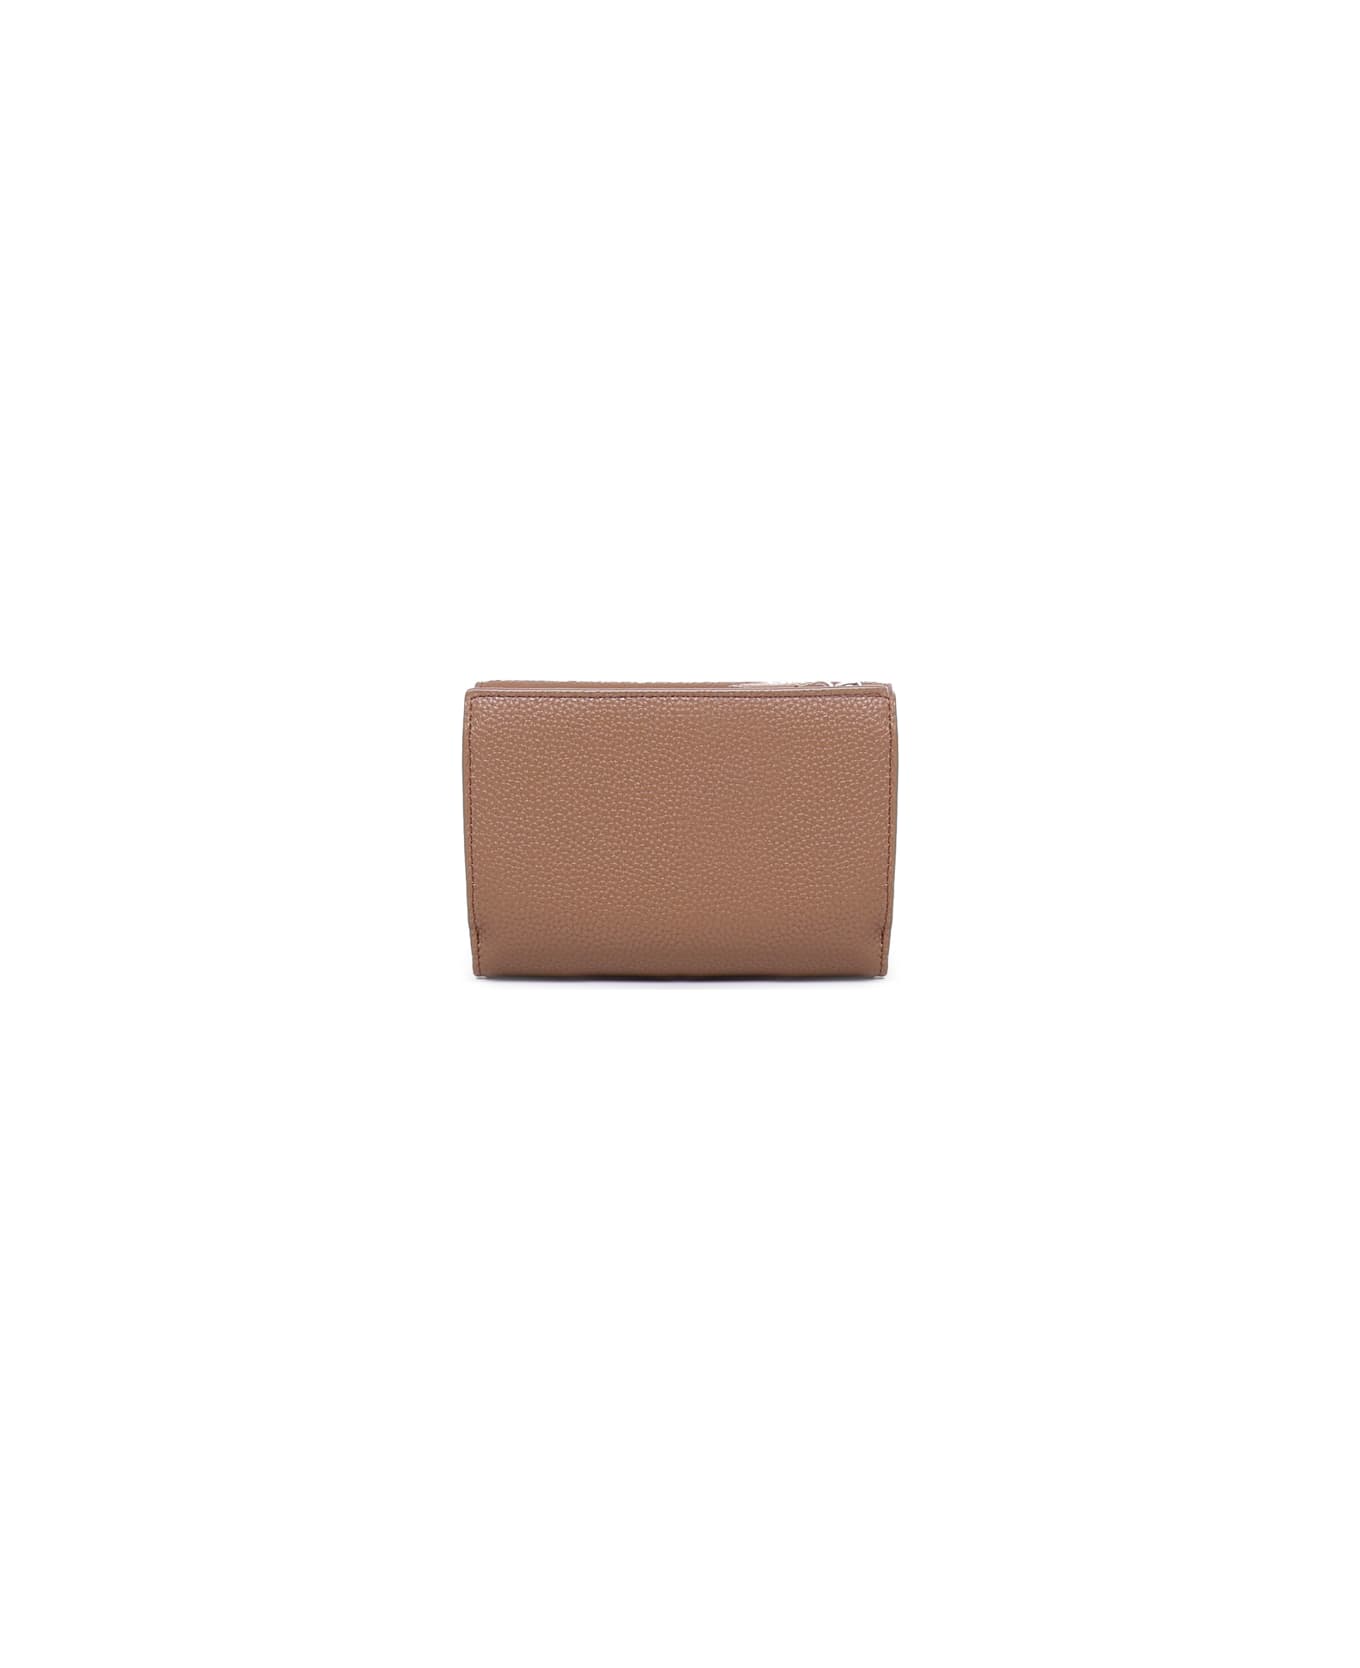 Giorgio Armani Wallet With Card Compartment And Magnetic Closure Giorgio Armani - BLACK 財布